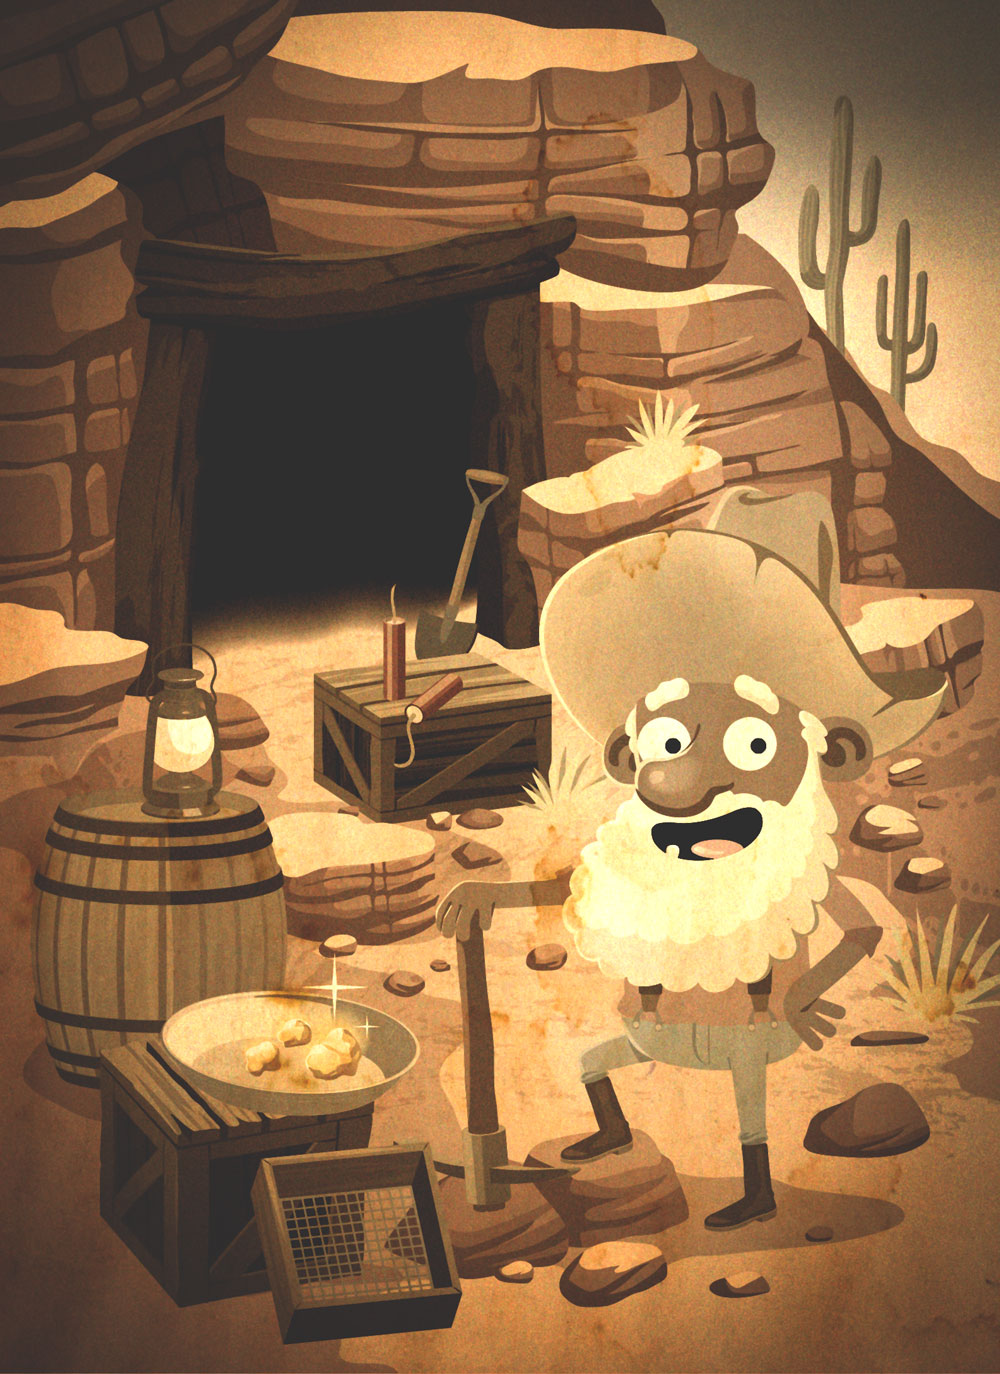 illustration du jeu pour enfant unlock kids 2, un chercheur d'or devant sa mine